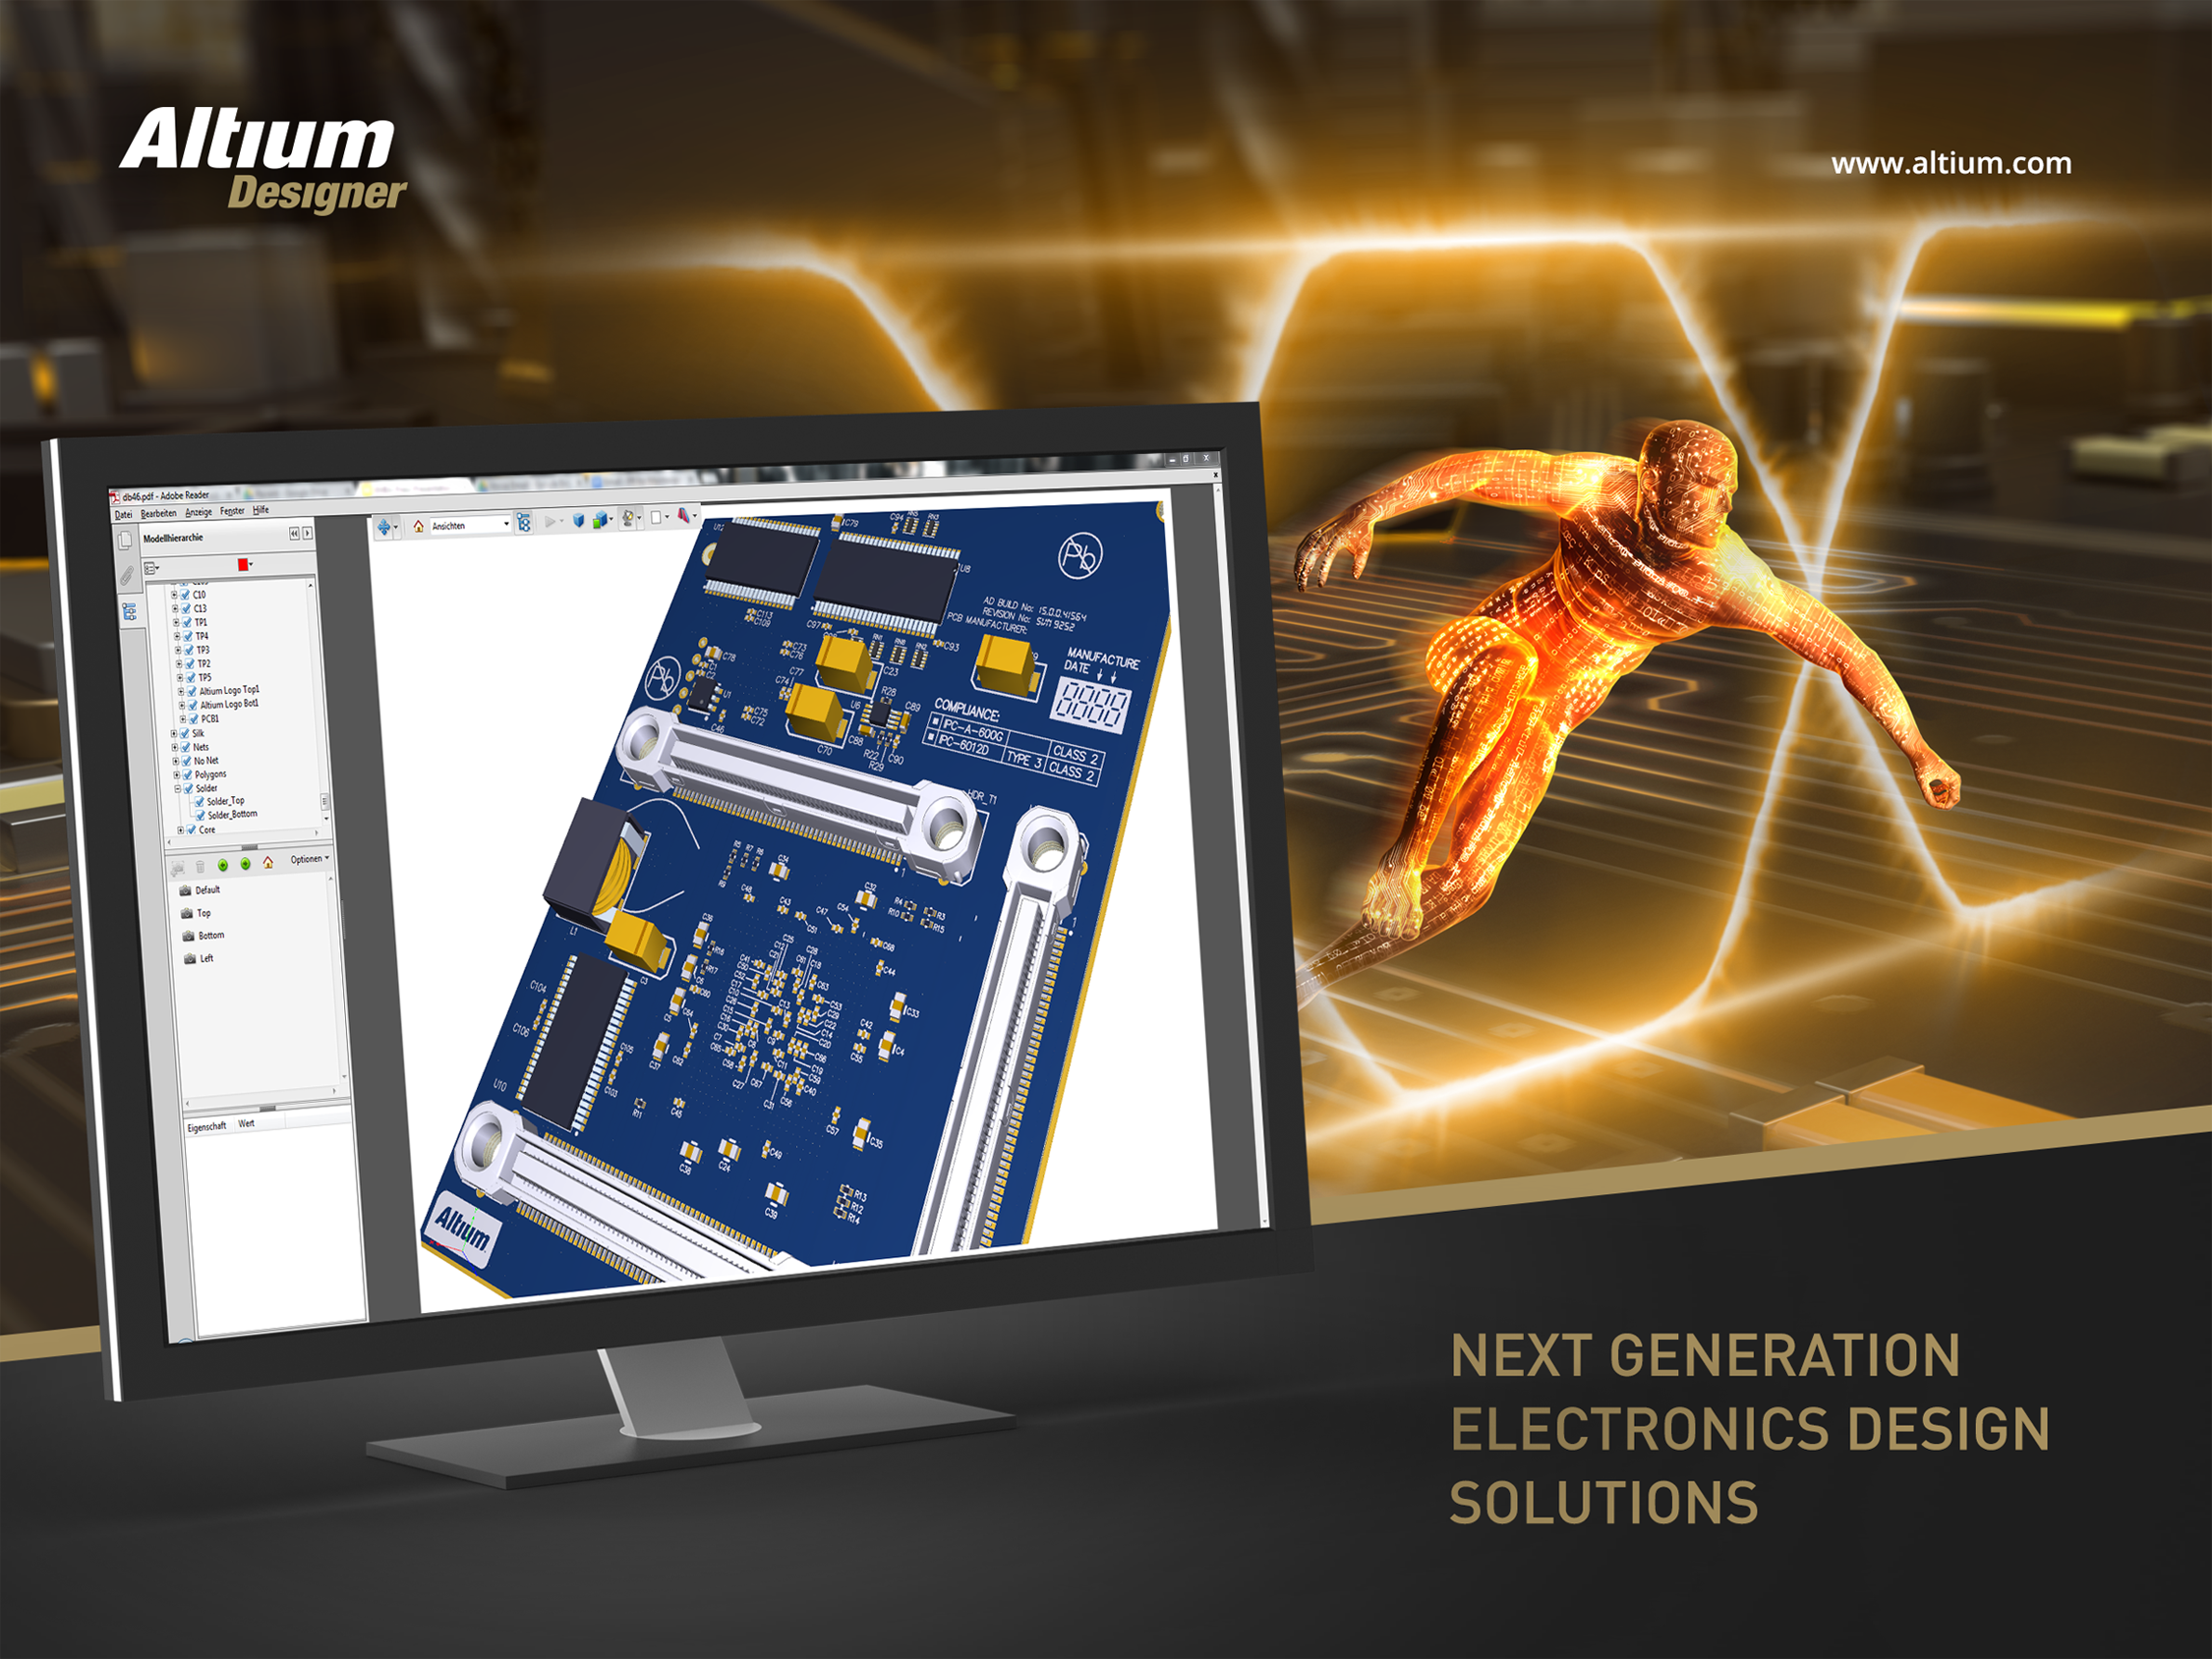 Downloadable Image for Altium Announces Altium Designer 15.1